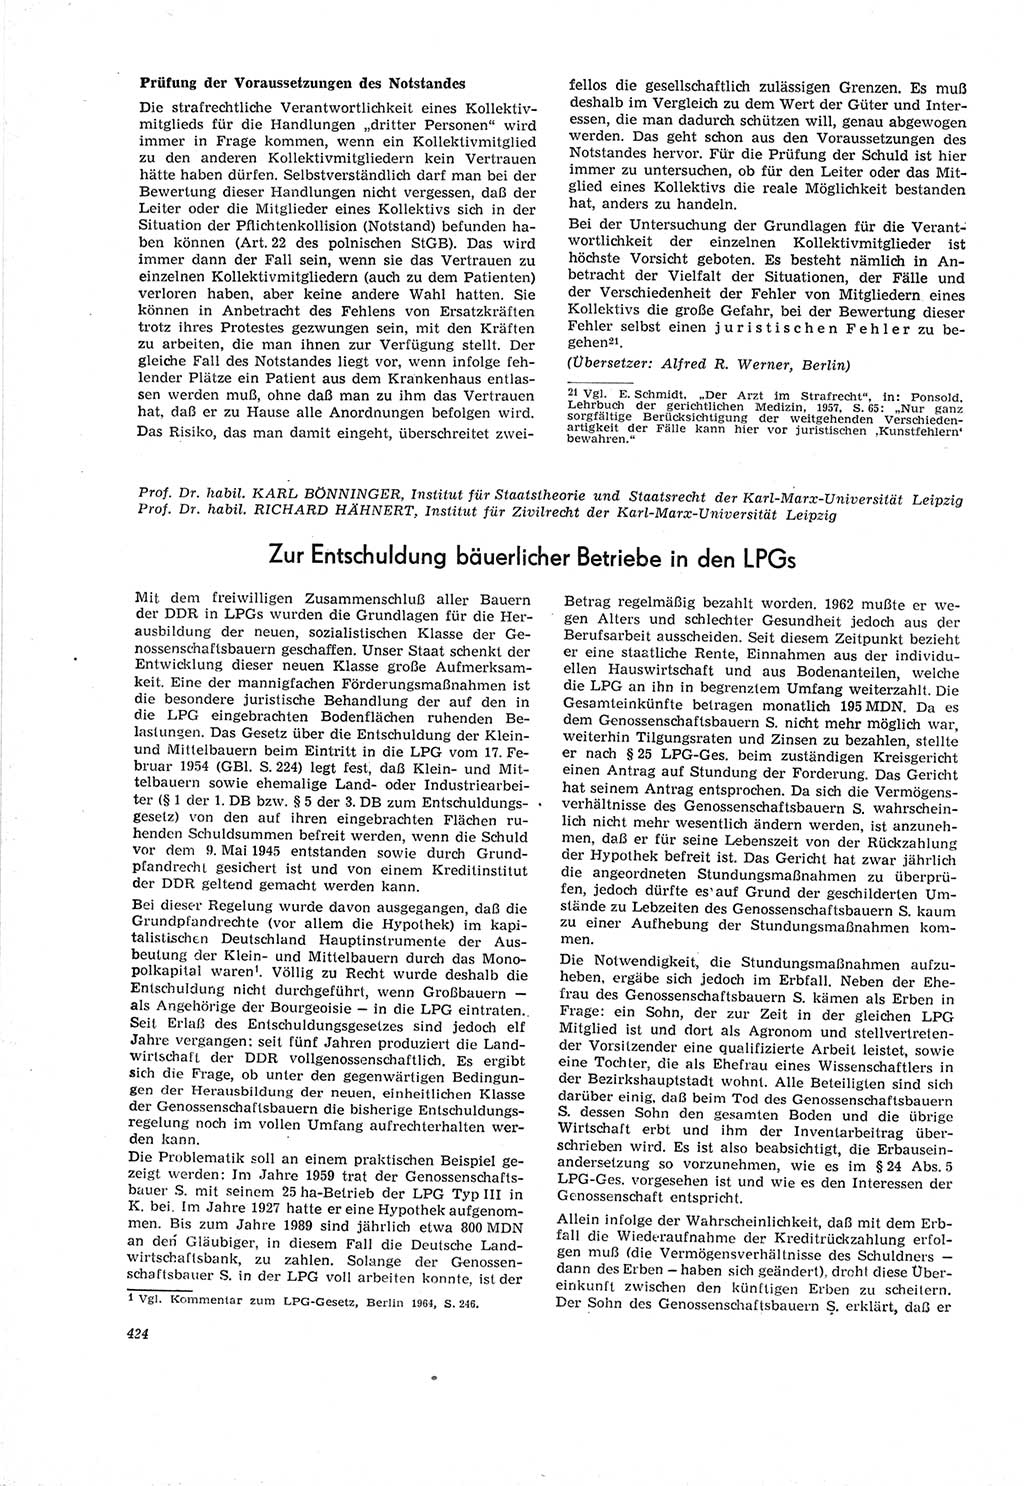 Neue Justiz (NJ), Zeitschrift für Recht und Rechtswissenschaft [Deutsche Demokratische Republik (DDR)], 19. Jahrgang 1965, Seite 424 (NJ DDR 1965, S. 424)